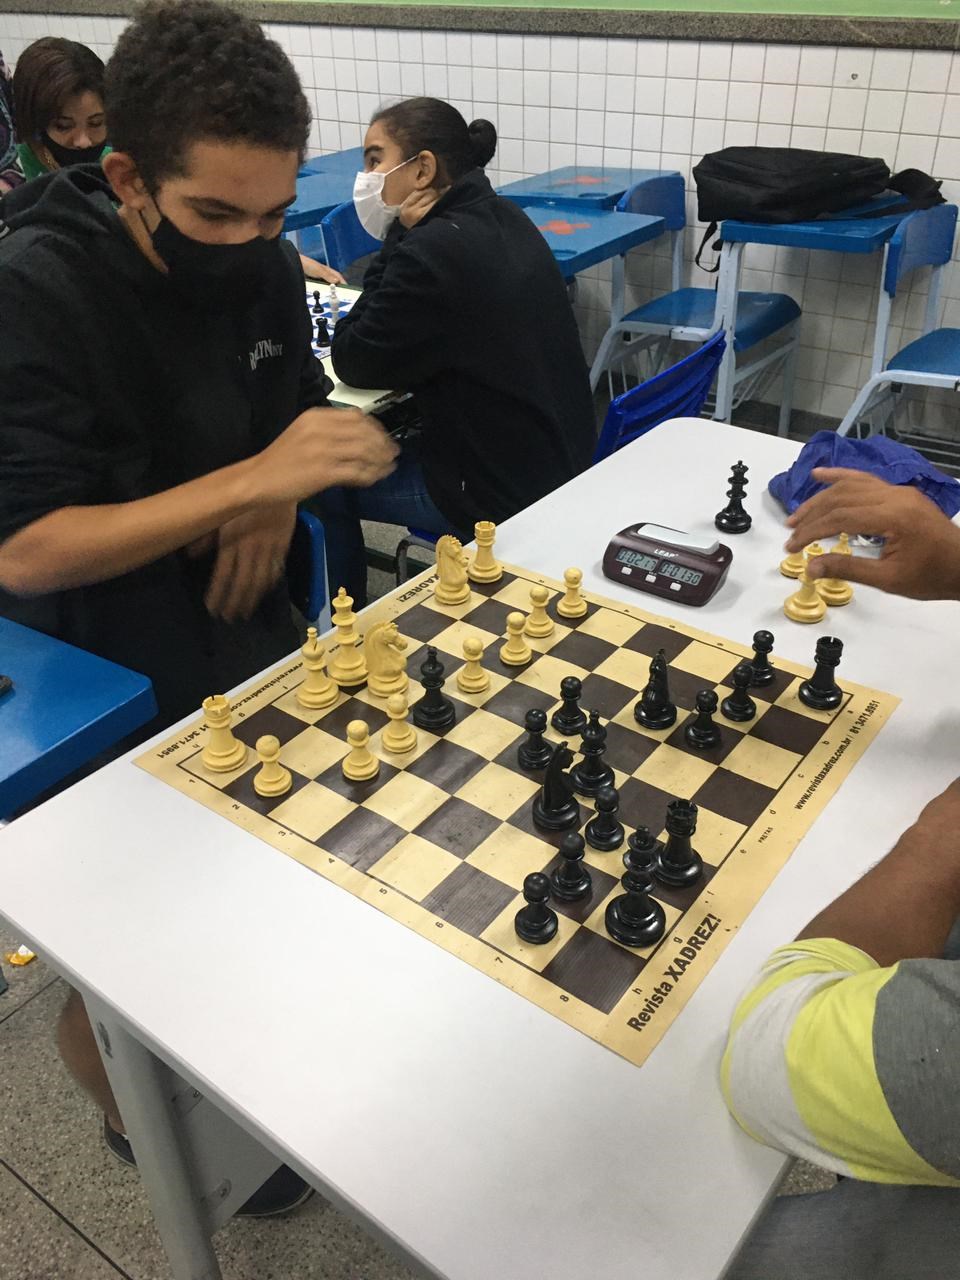 Xadrez para vida - O XADREZ BRASILEIRO --- O xadrez chegou ao